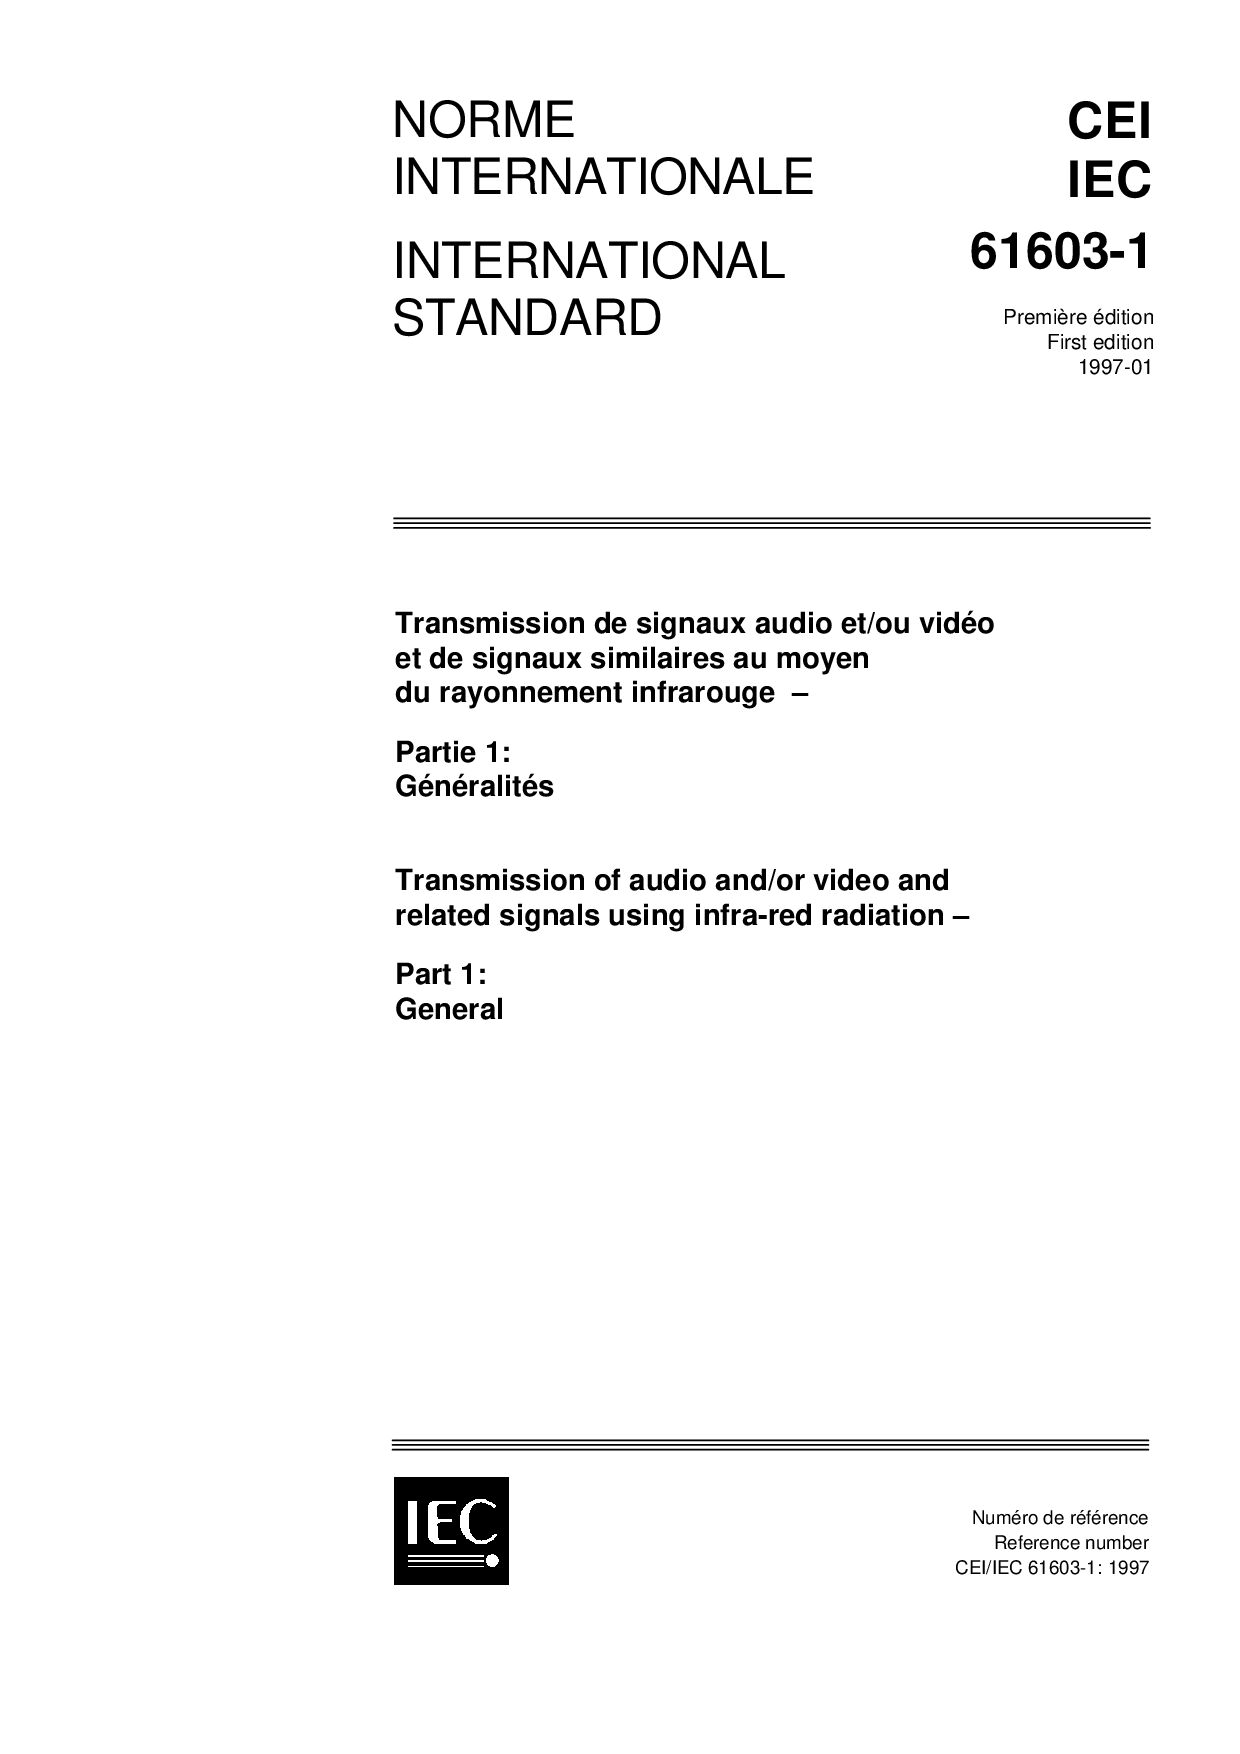 IEC 61603-1:1997